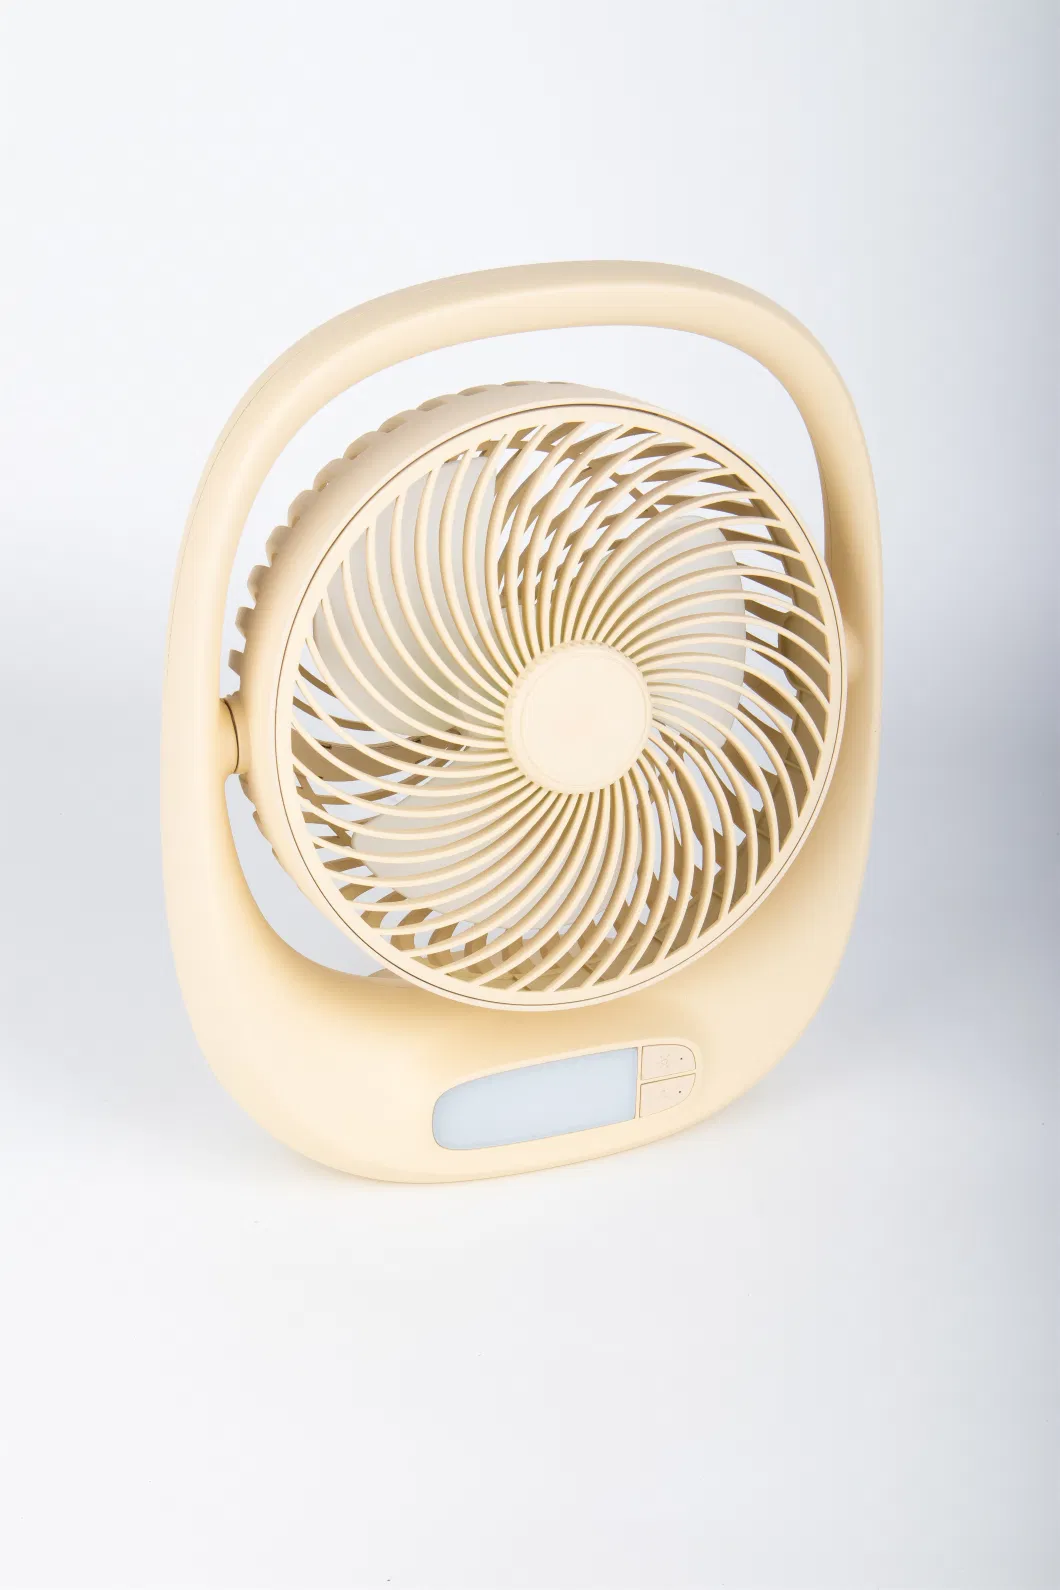 7 Inch Rechargeable Desk Fan with Emergency Light 3 Fan Speed